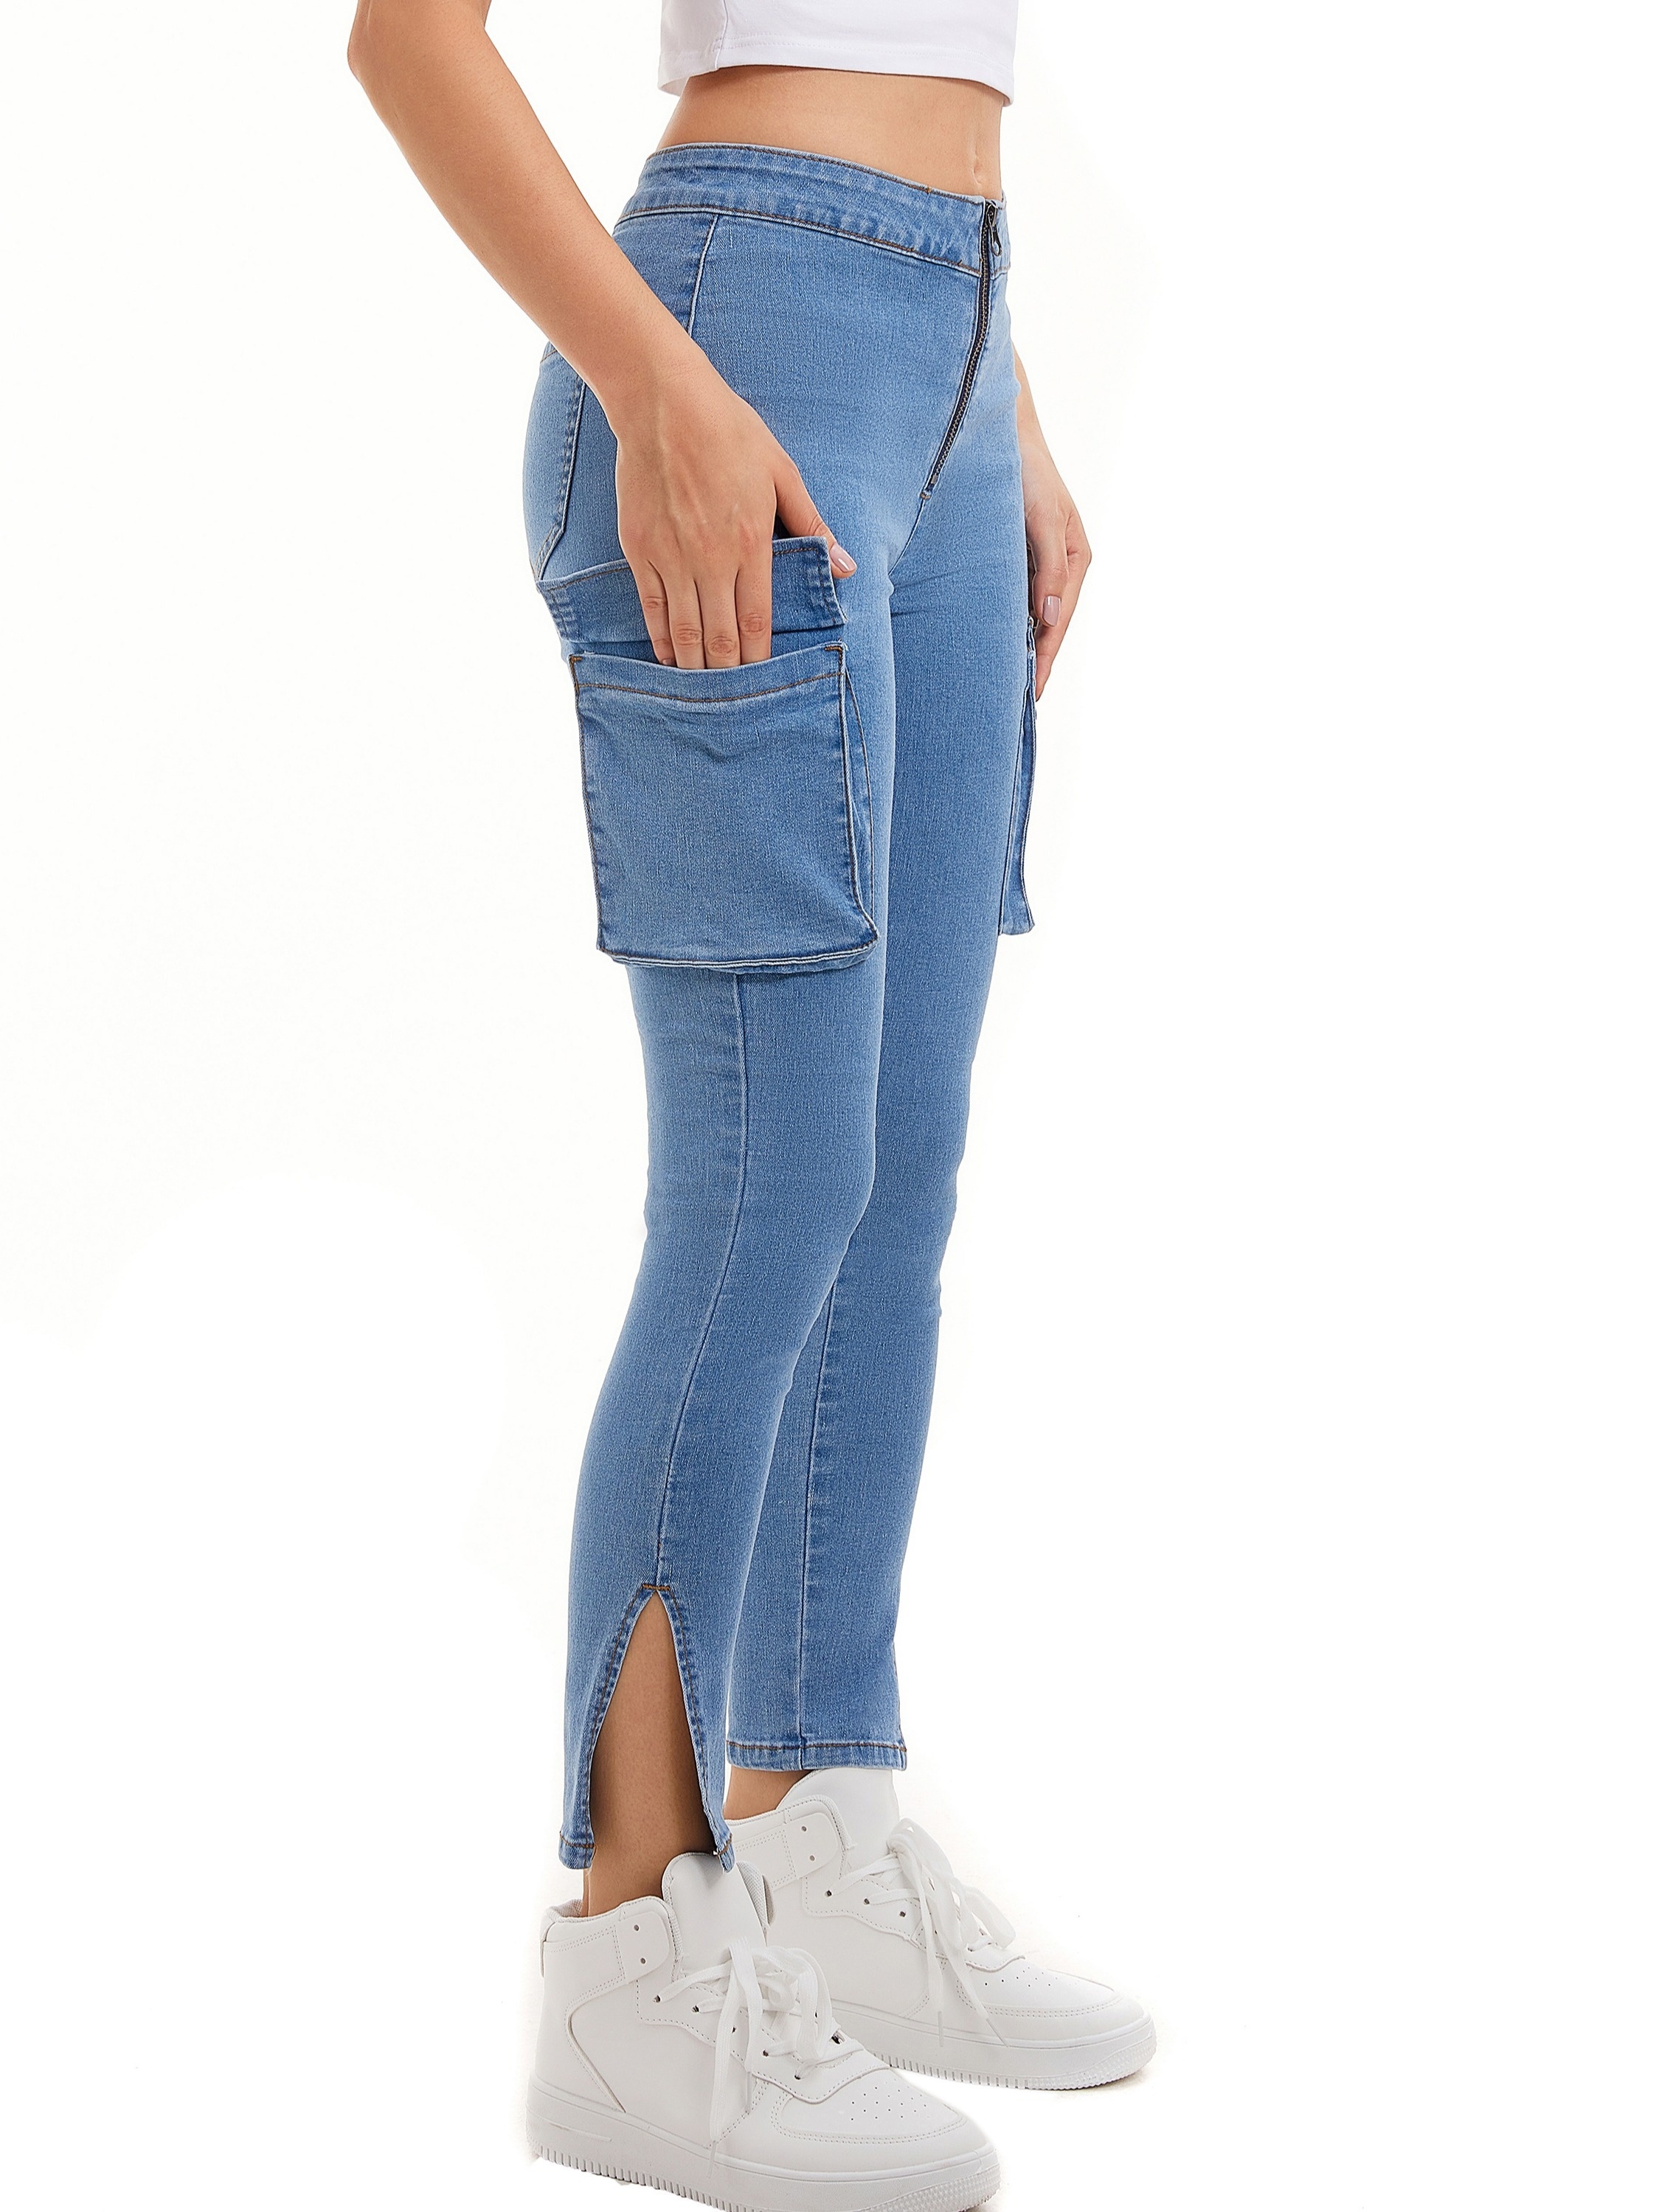 pantalones ajustados básicos para mujer cómodos y suaves de tela de color  sólido para pantalones ajustados S-3XL